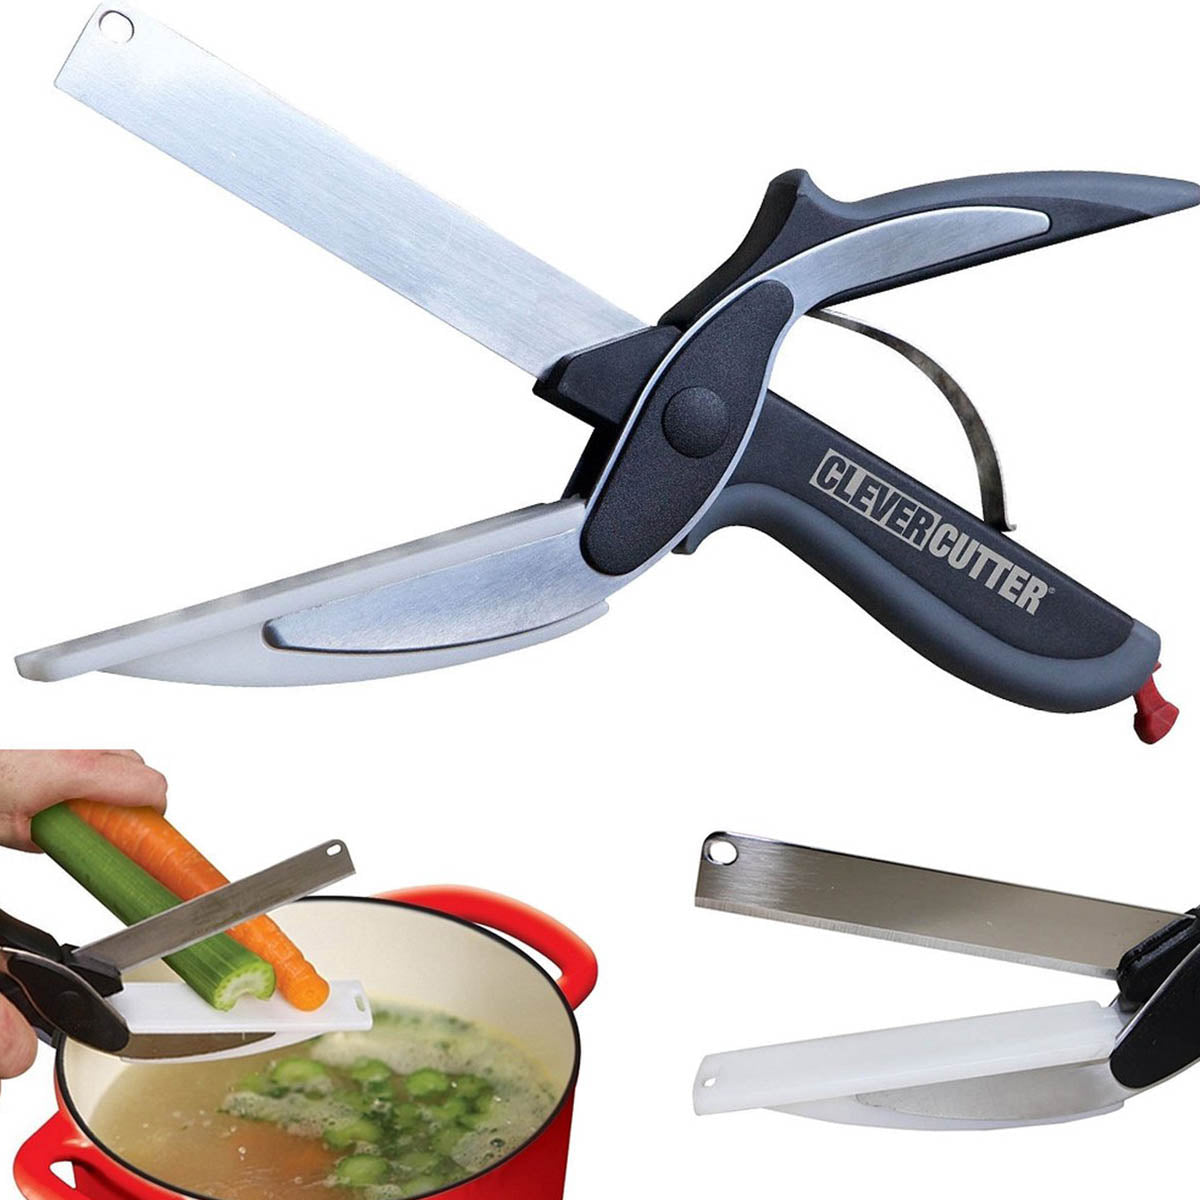 Ariko Clever Cutter 2in1 Schneidebrett und Messer – Küchenschere – Küchenhelfer – Küchenutensilien